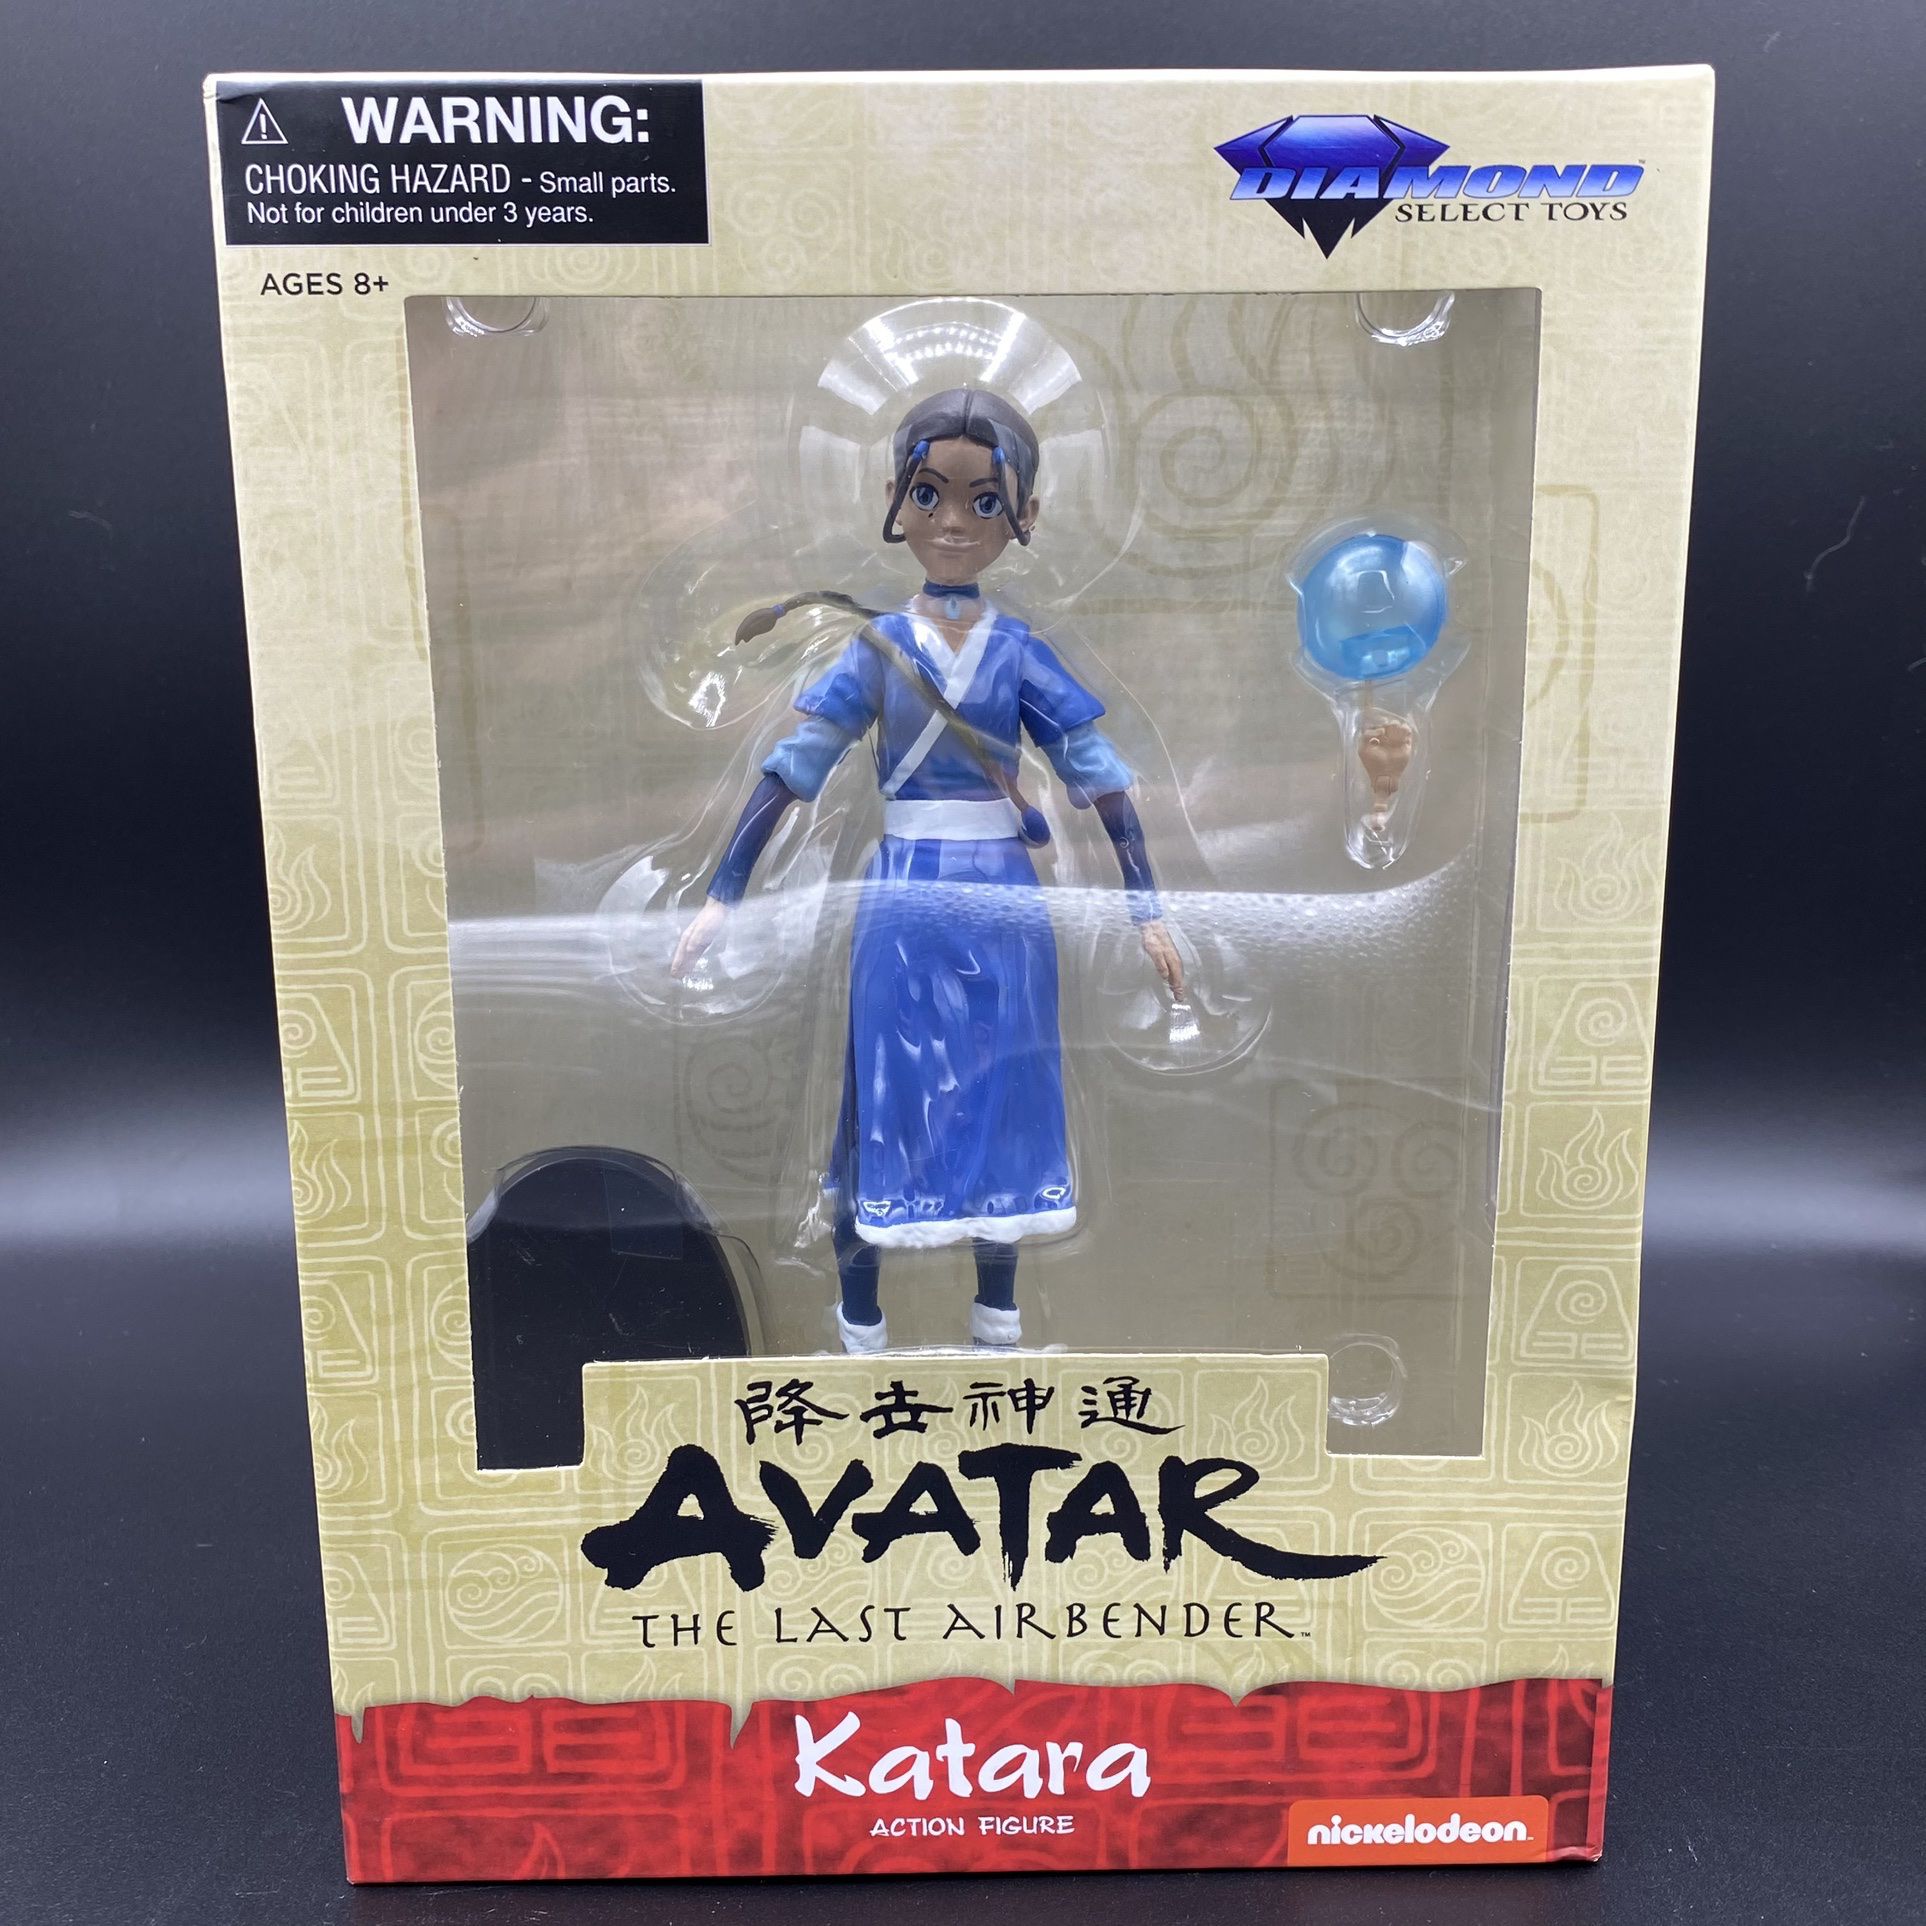 Avatar The Last Airbender Katara Action Figure Diamond Select Toys Nickelodeon